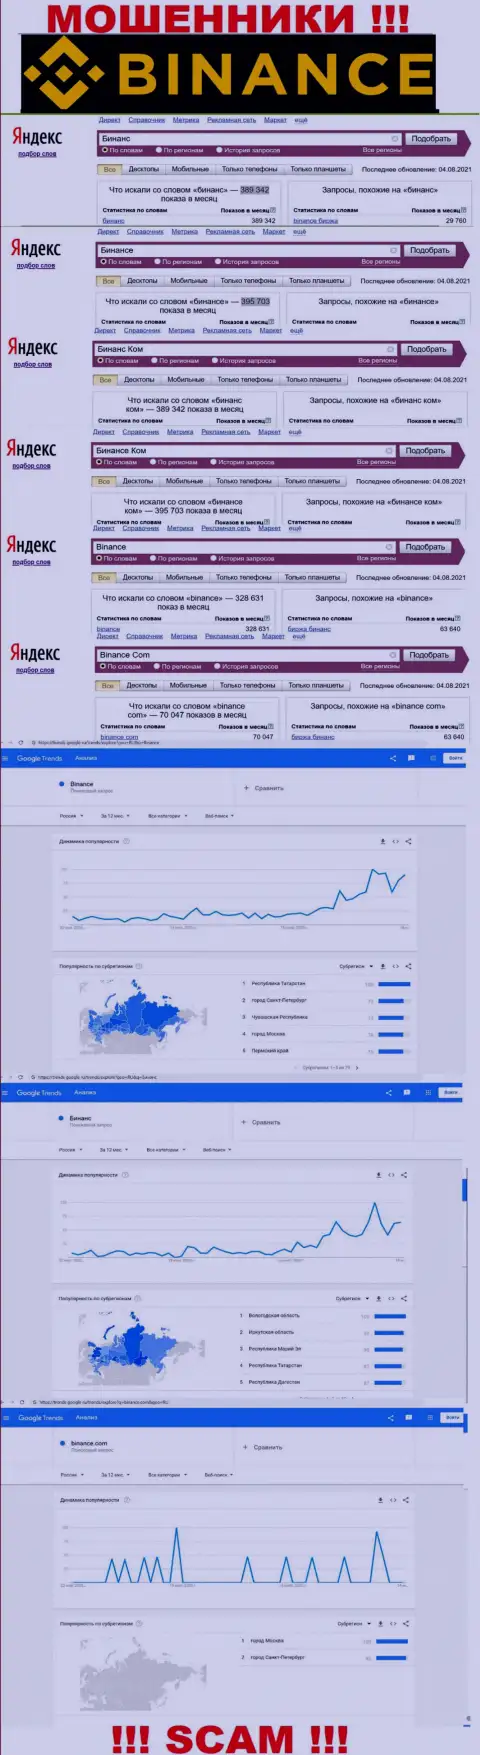 Статистические показатели о запросах в поисковиках всемирной internet сети сведений об конторе Binance